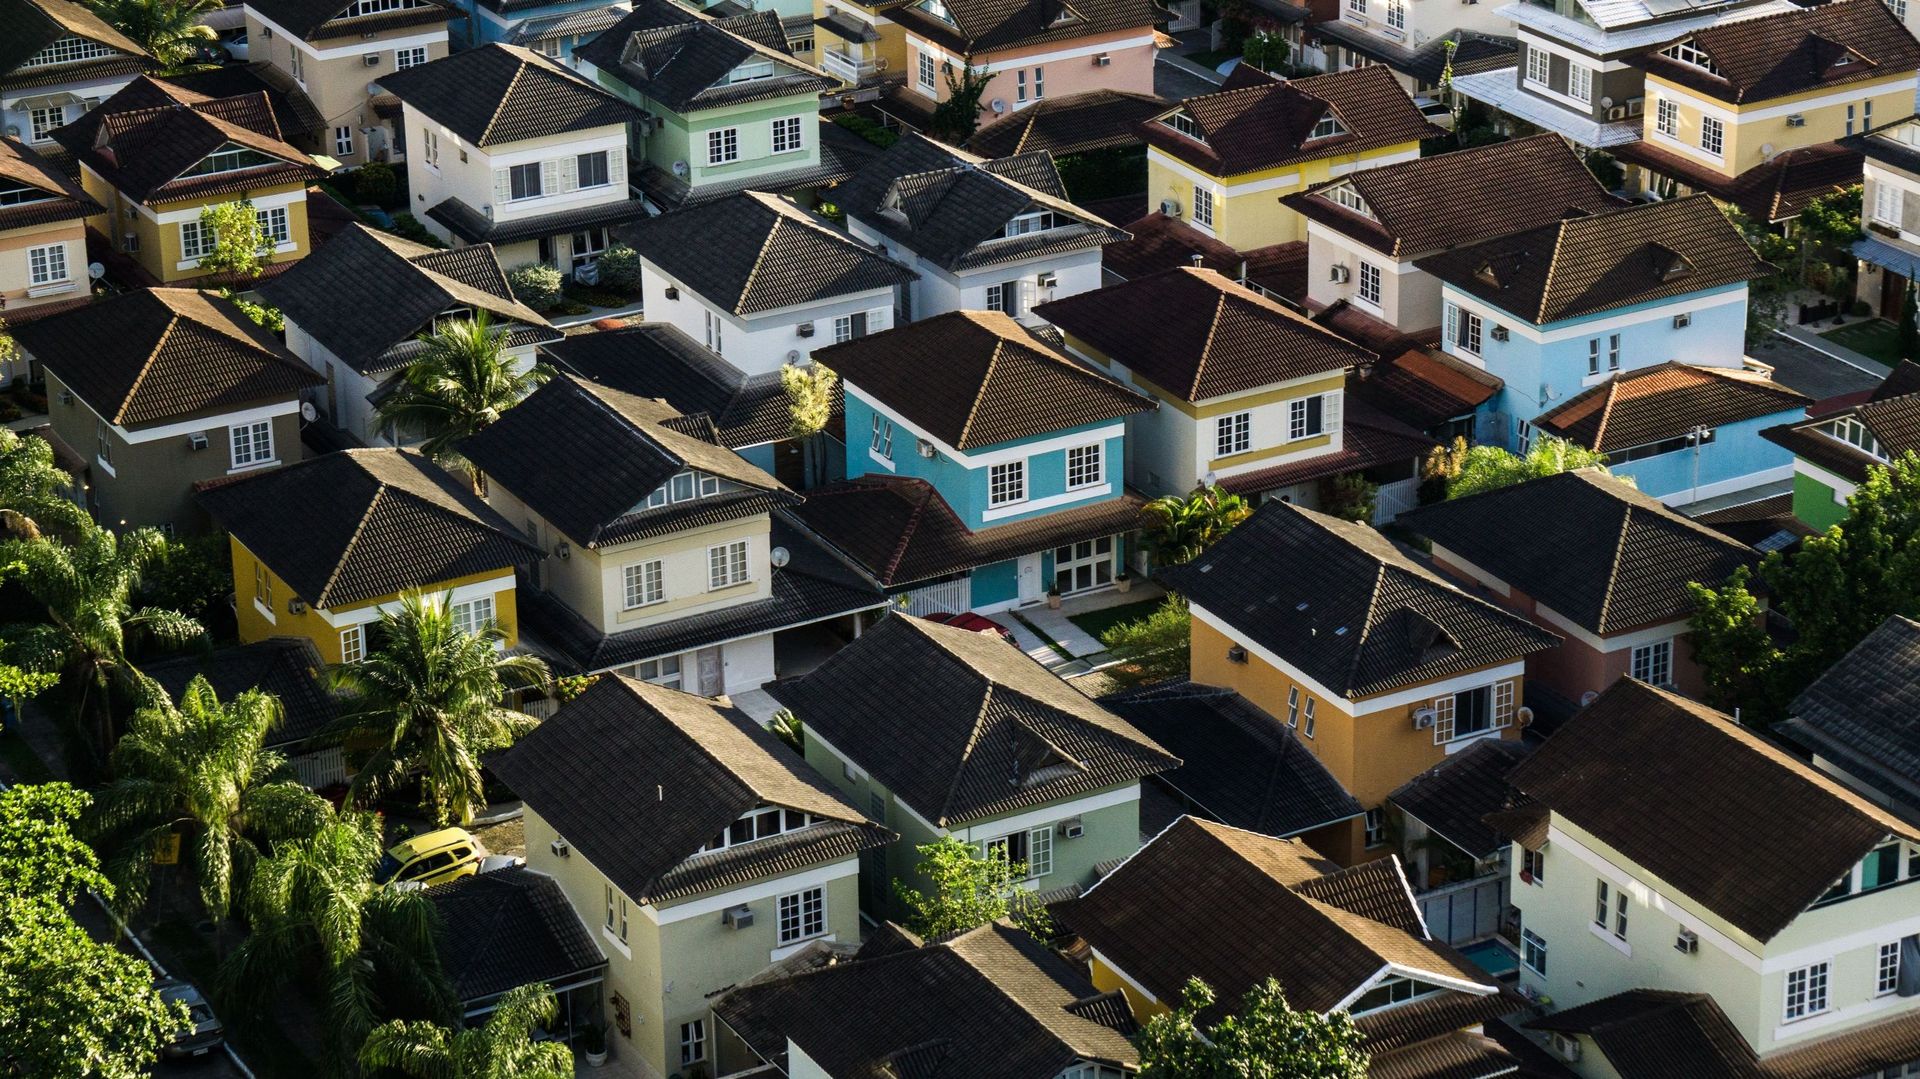 Ce modèle immobilier est-il en train de pousser son dernier souffle ? Oui, selon certain écologistes allemands.